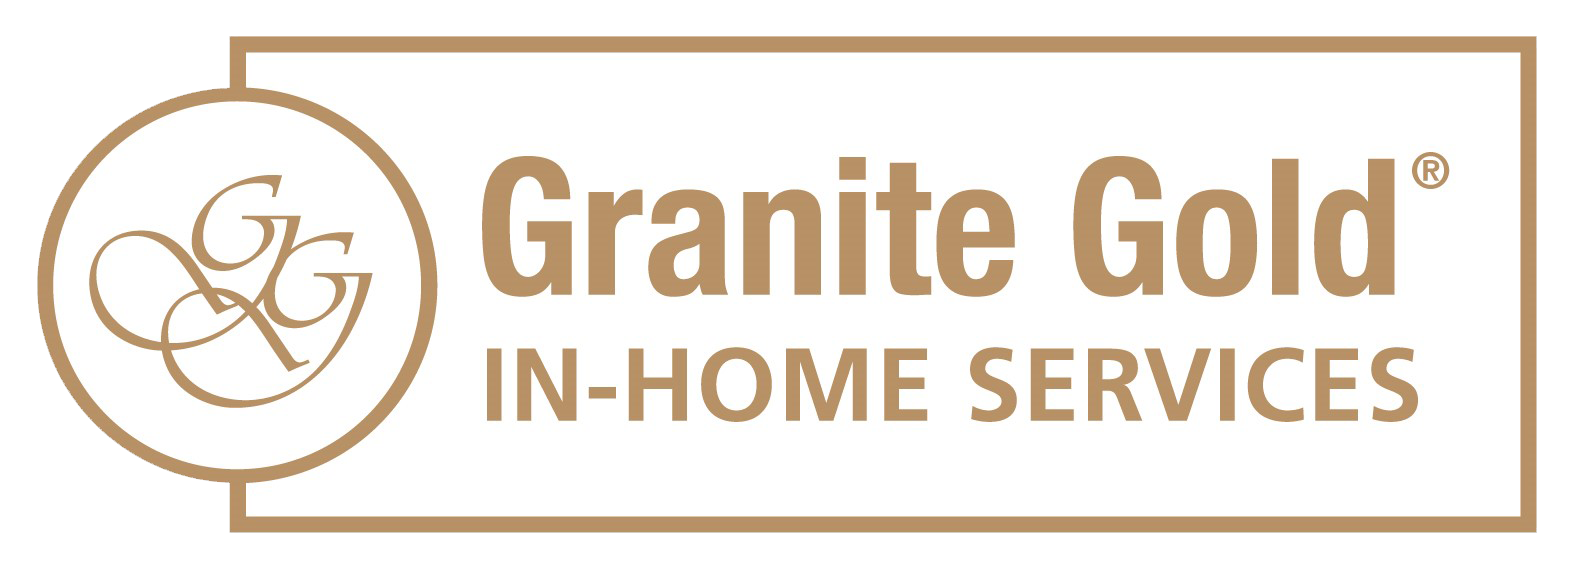 Granite Gold Home Services